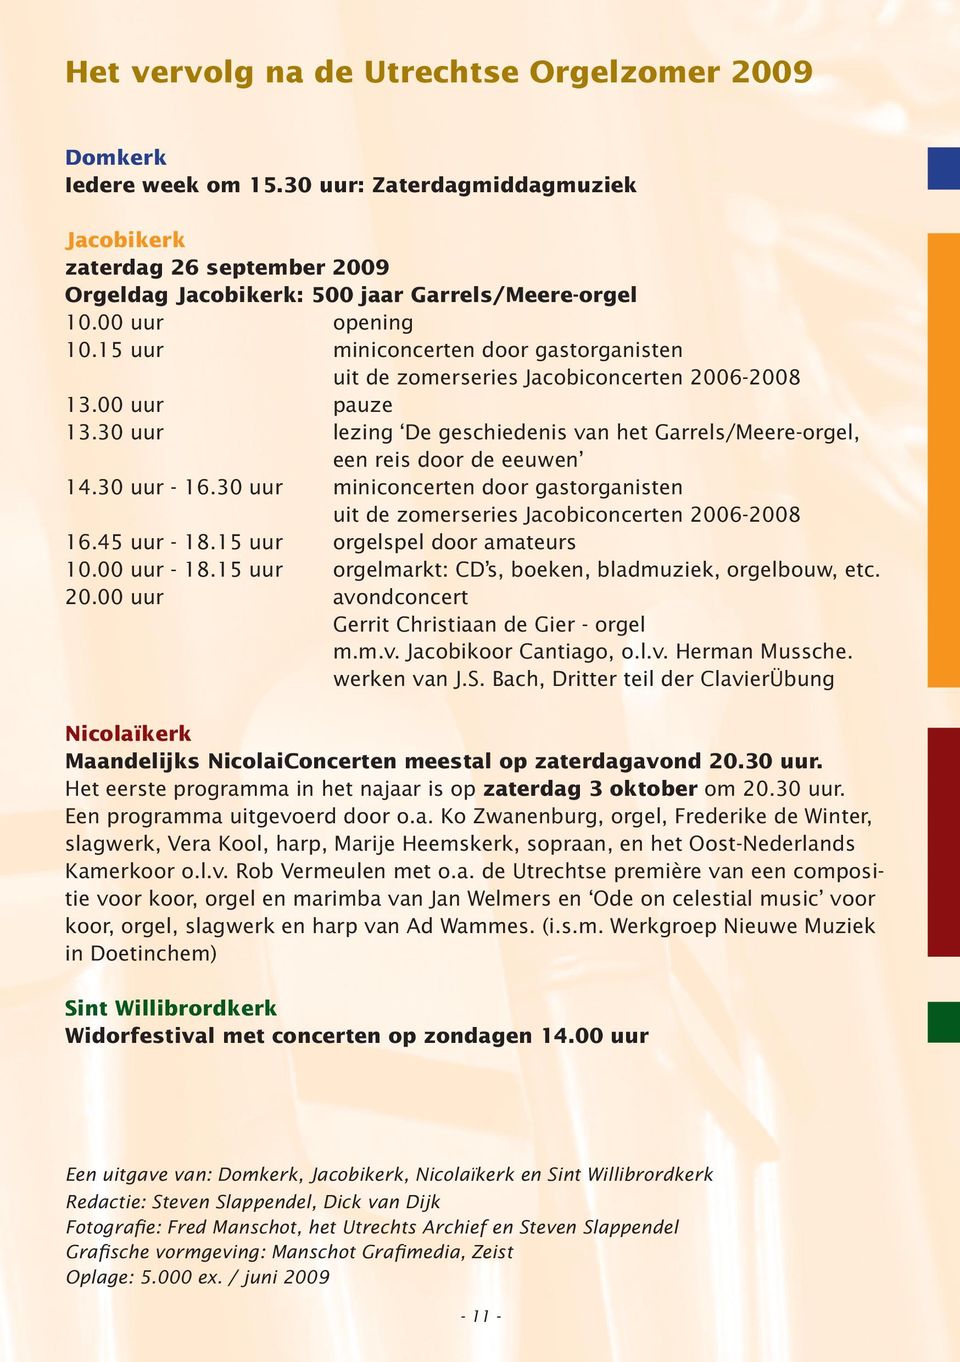 30 uur lezing De geschiedenis van het Garrels/Meere-orgel, een reis door de eeuwen 14.30 uur - 16.30 uur miniconcerten door gastorganisten uit de zomerseries Jacobiconcerten 2006-2008 16.45 uur - 18.